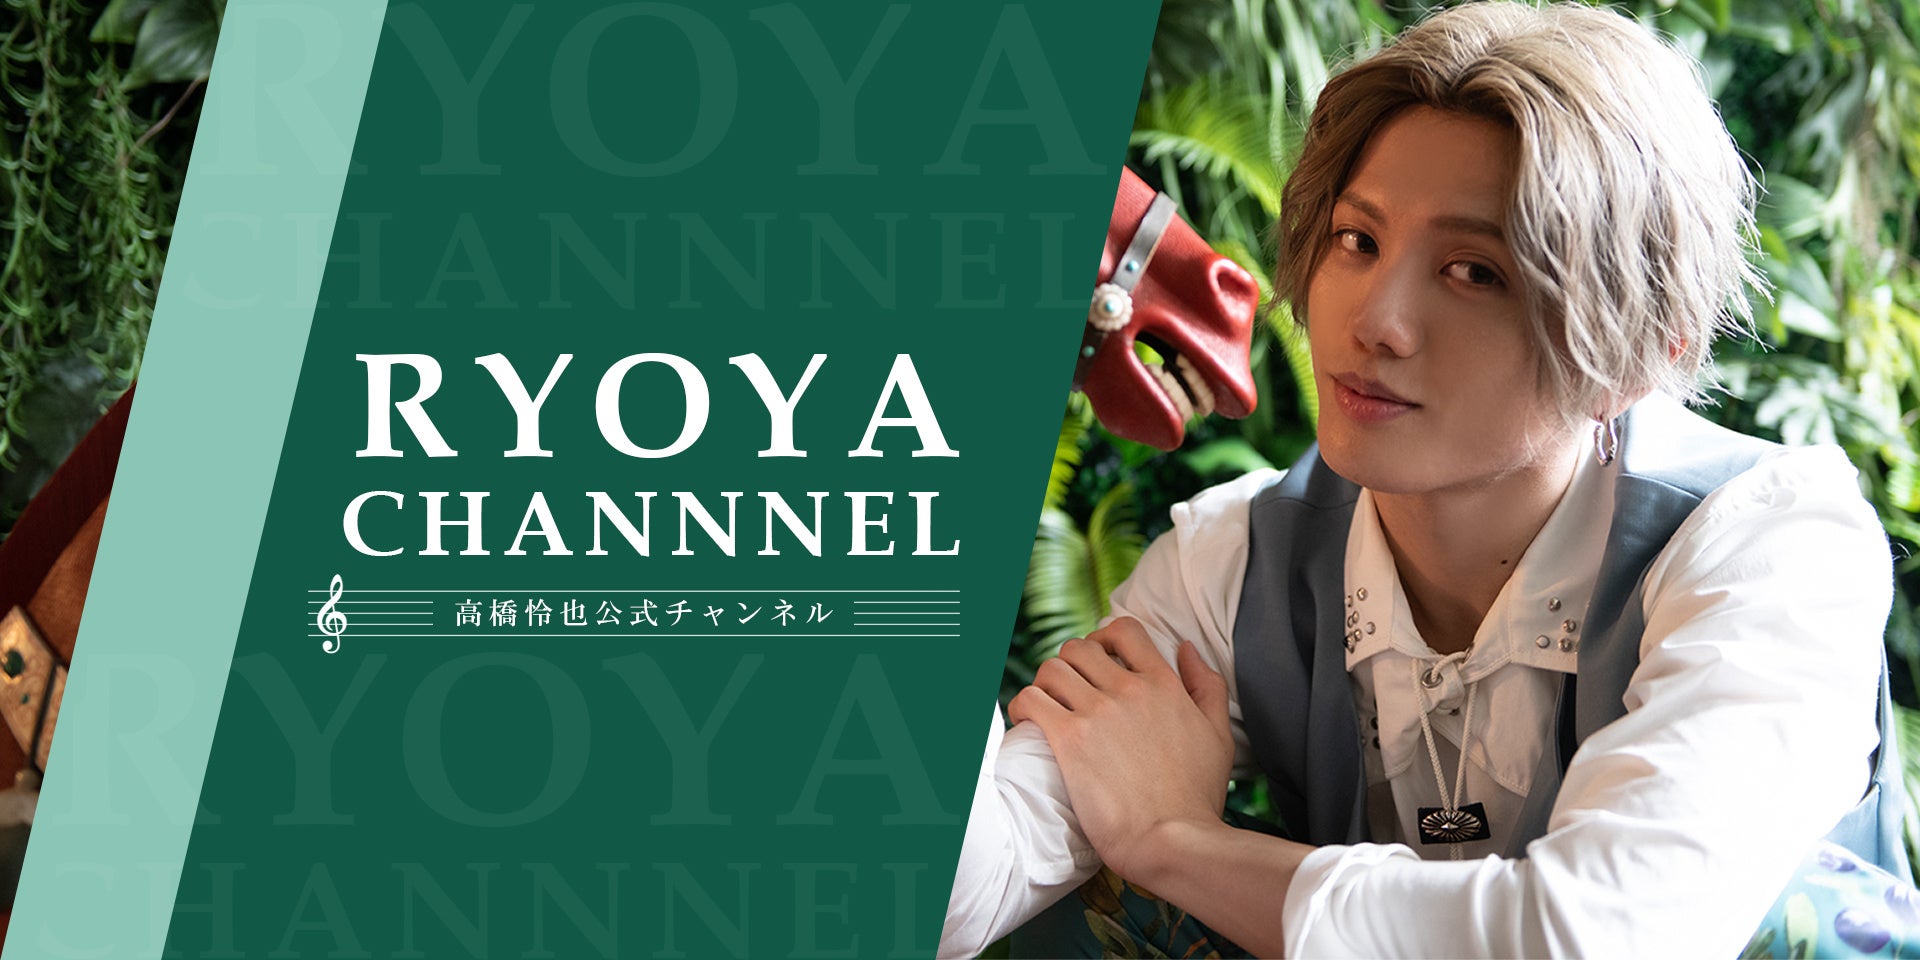 俳優・高橋怜也がメインパーソナリティをつとめ、月1回以上の生配信を行うニコニコチャンネル「高橋怜也公式チャンネル『RYOYA CHANNEL』」を開設いたしました。のサブ画像1